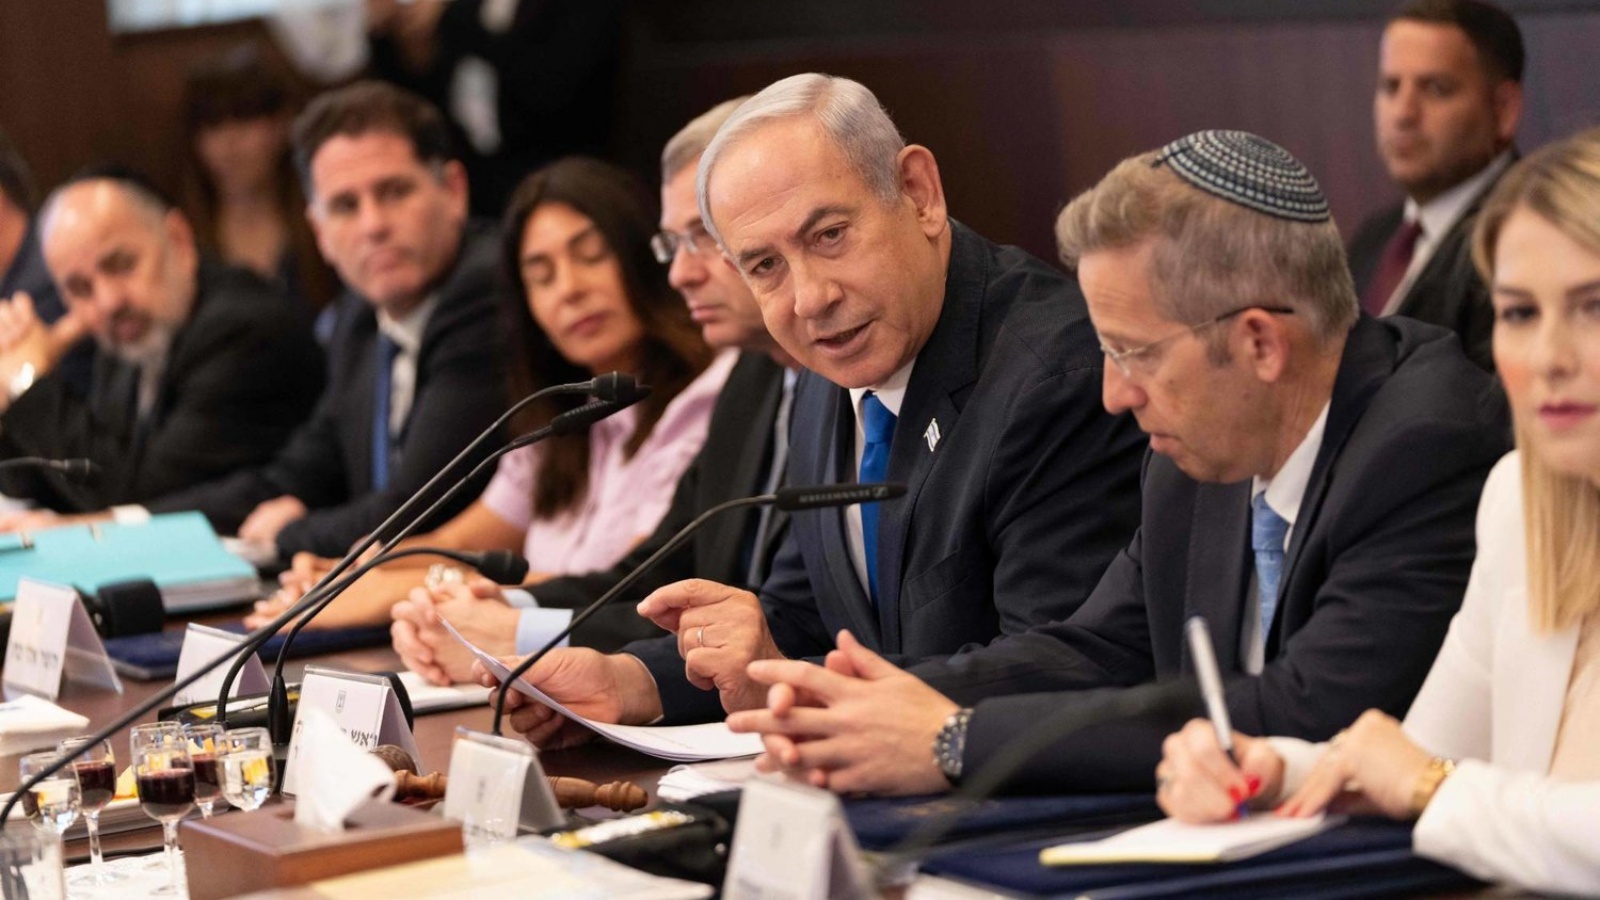 رئيس الحكومة الإسرائيلية بنيامين نتانياهو خلال اجتماع حكومته في القدس